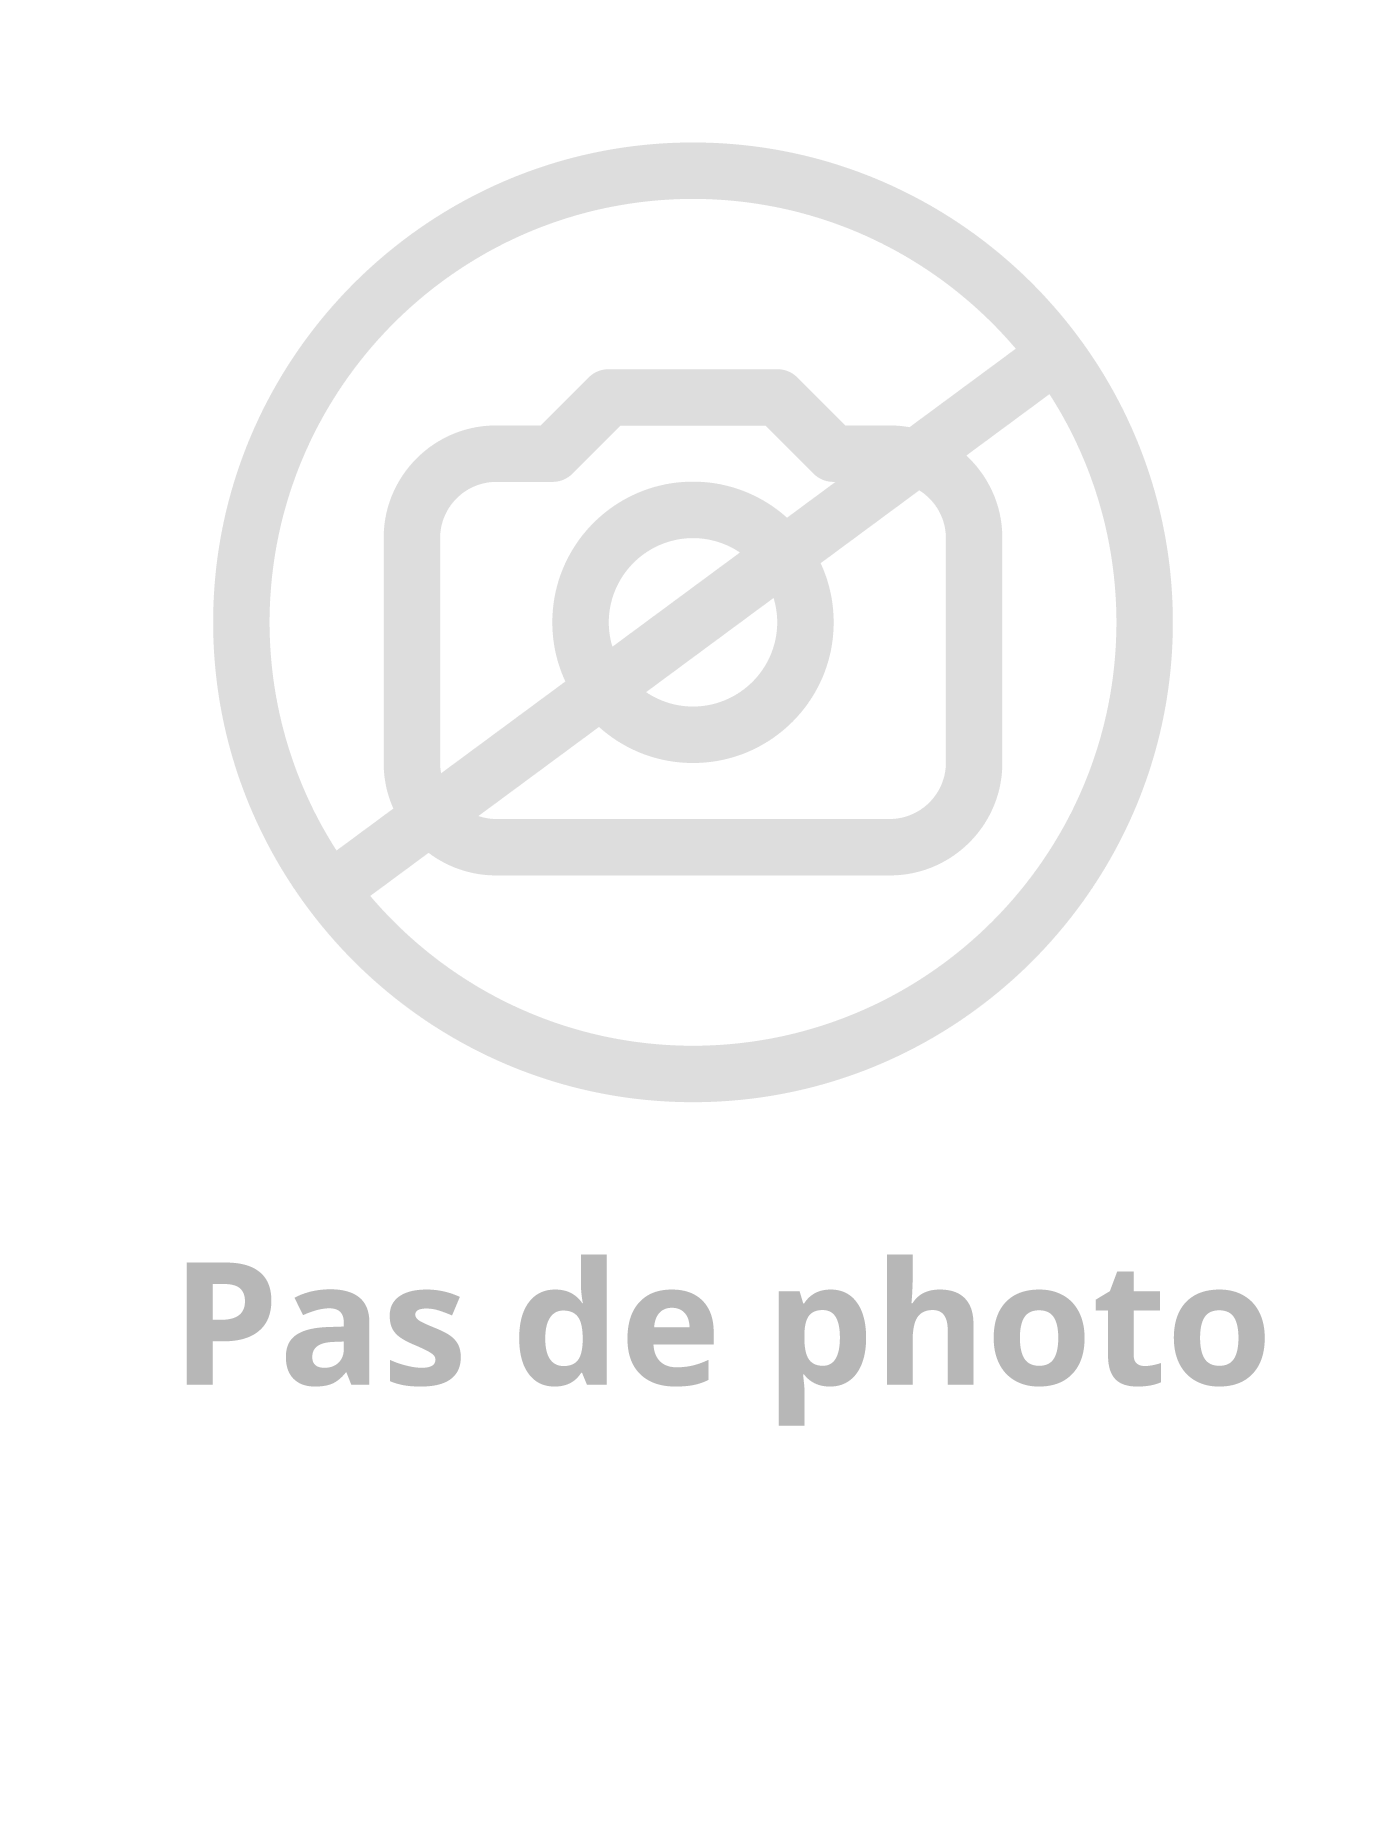 Image du produit PASSAGE DE CÂBLE EN APPLIQUE LG. 400mm - 10 BORNES DEBROCHABLES - GAINE ACIER INOX / IP64 IK08